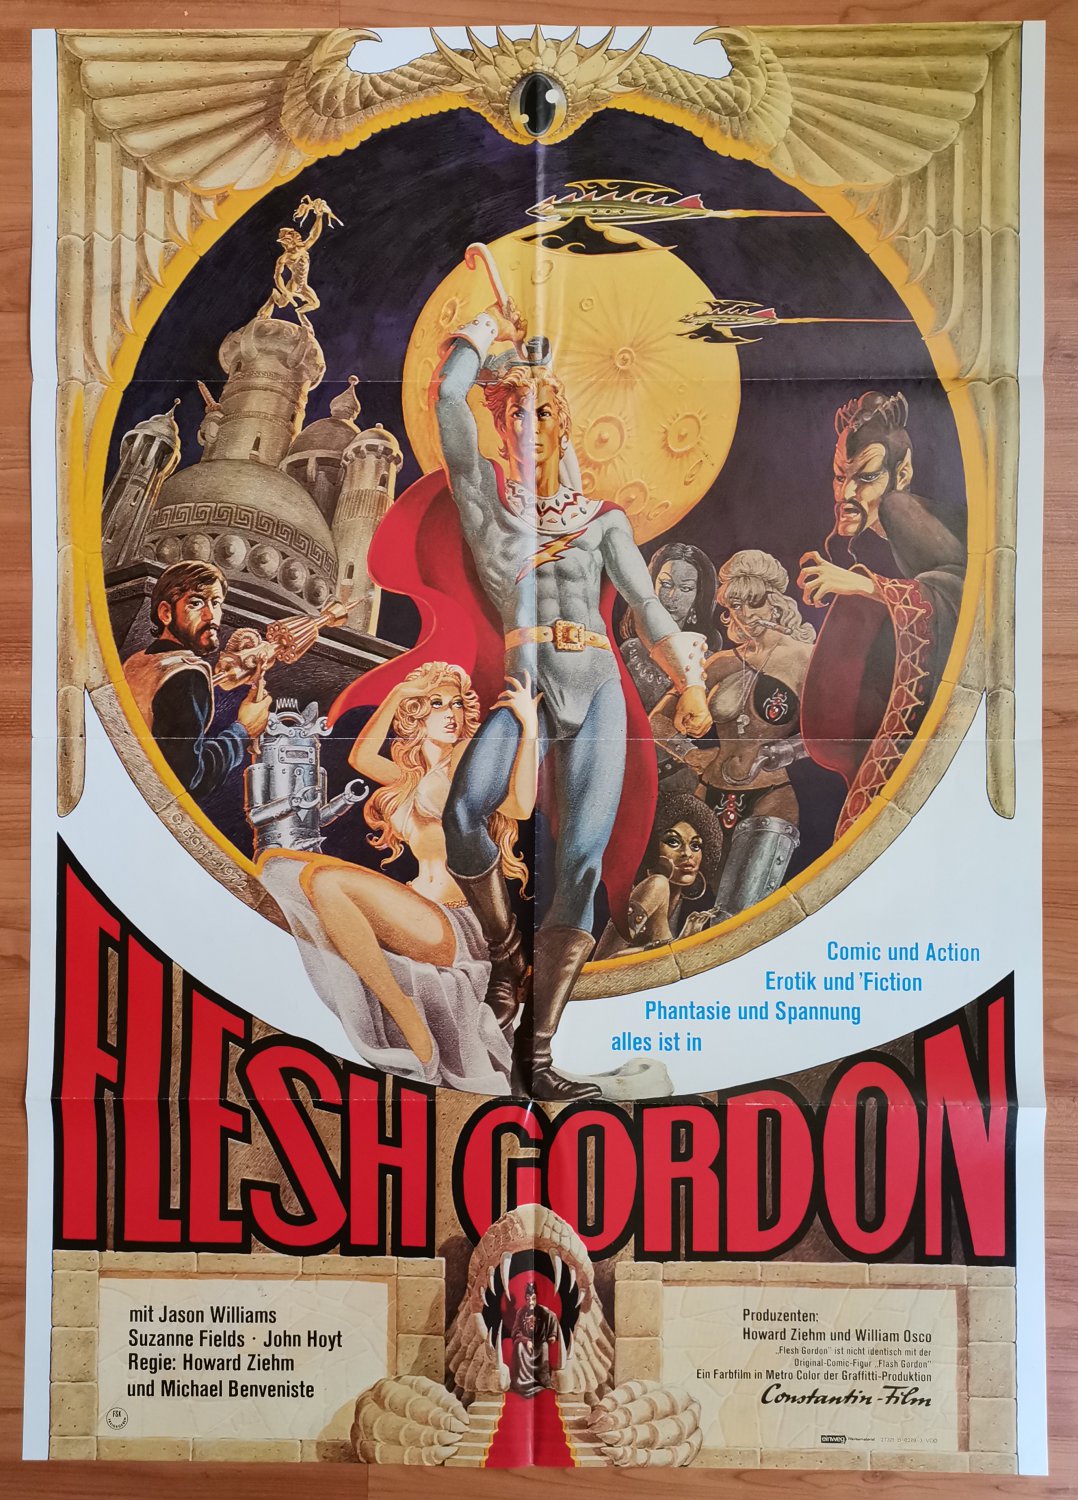 Flesh Gordon, Jason Williams, Suzanne Fields, Cinema Poster 1974